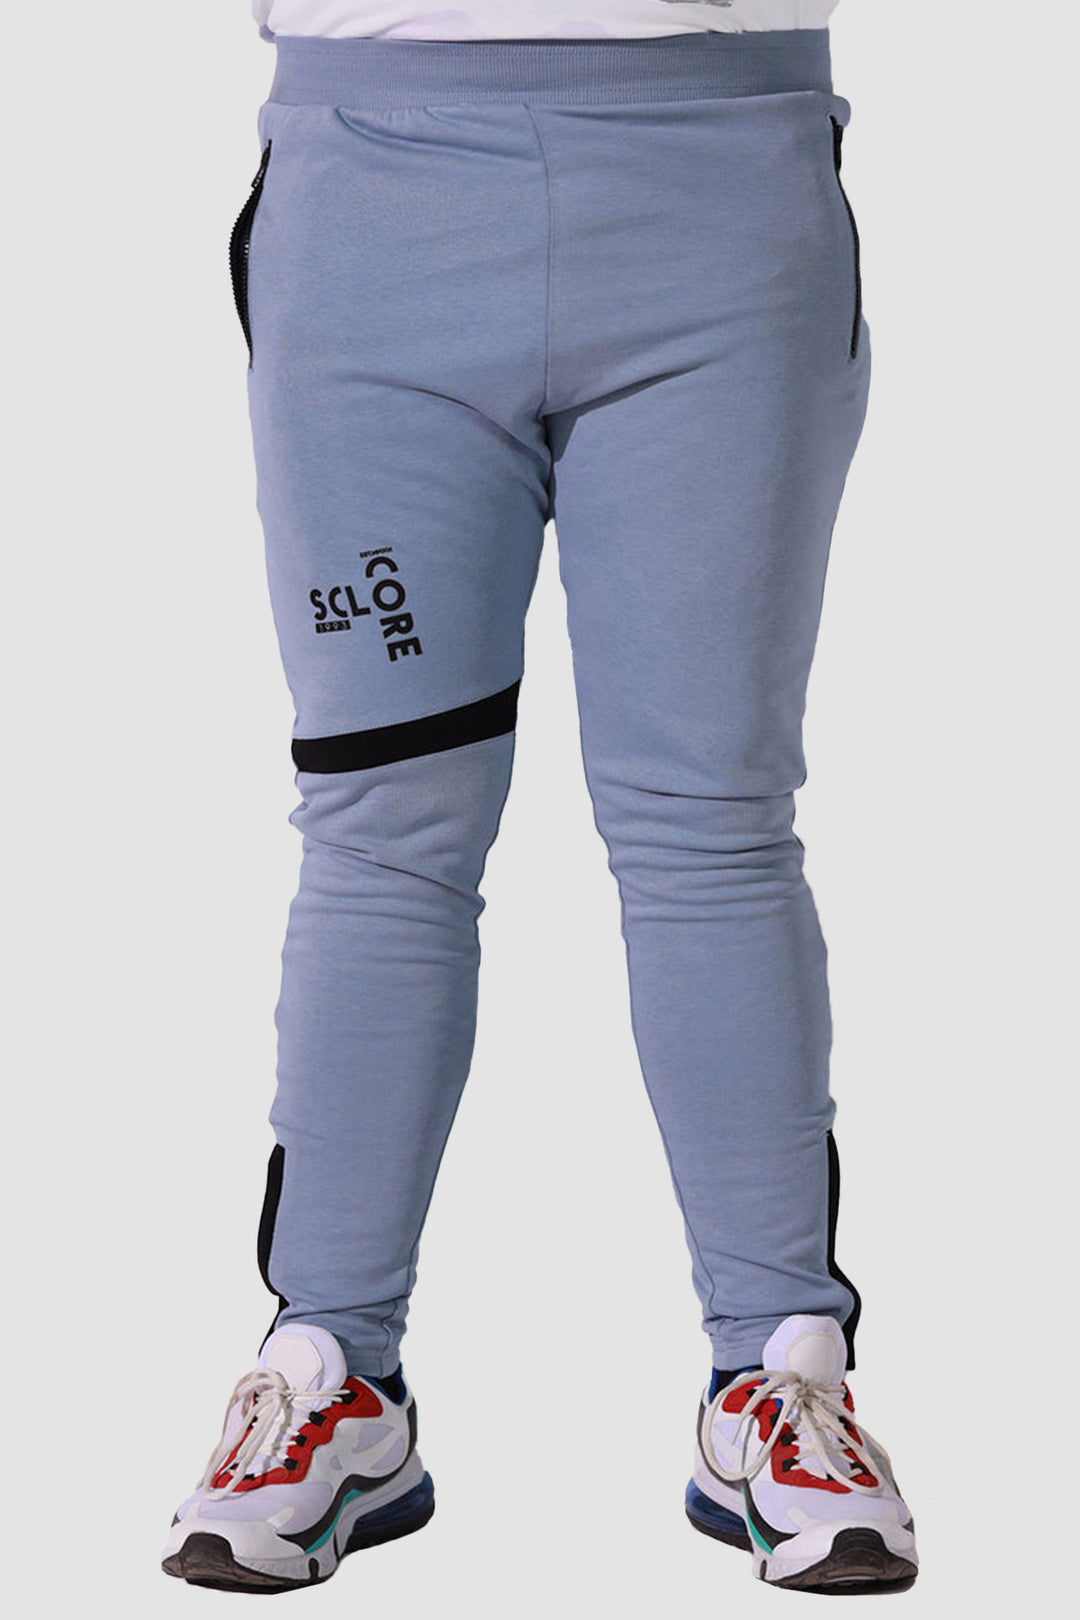 Cameo Blue Jogger Pants (Plus Size) - P22 - MTR033P